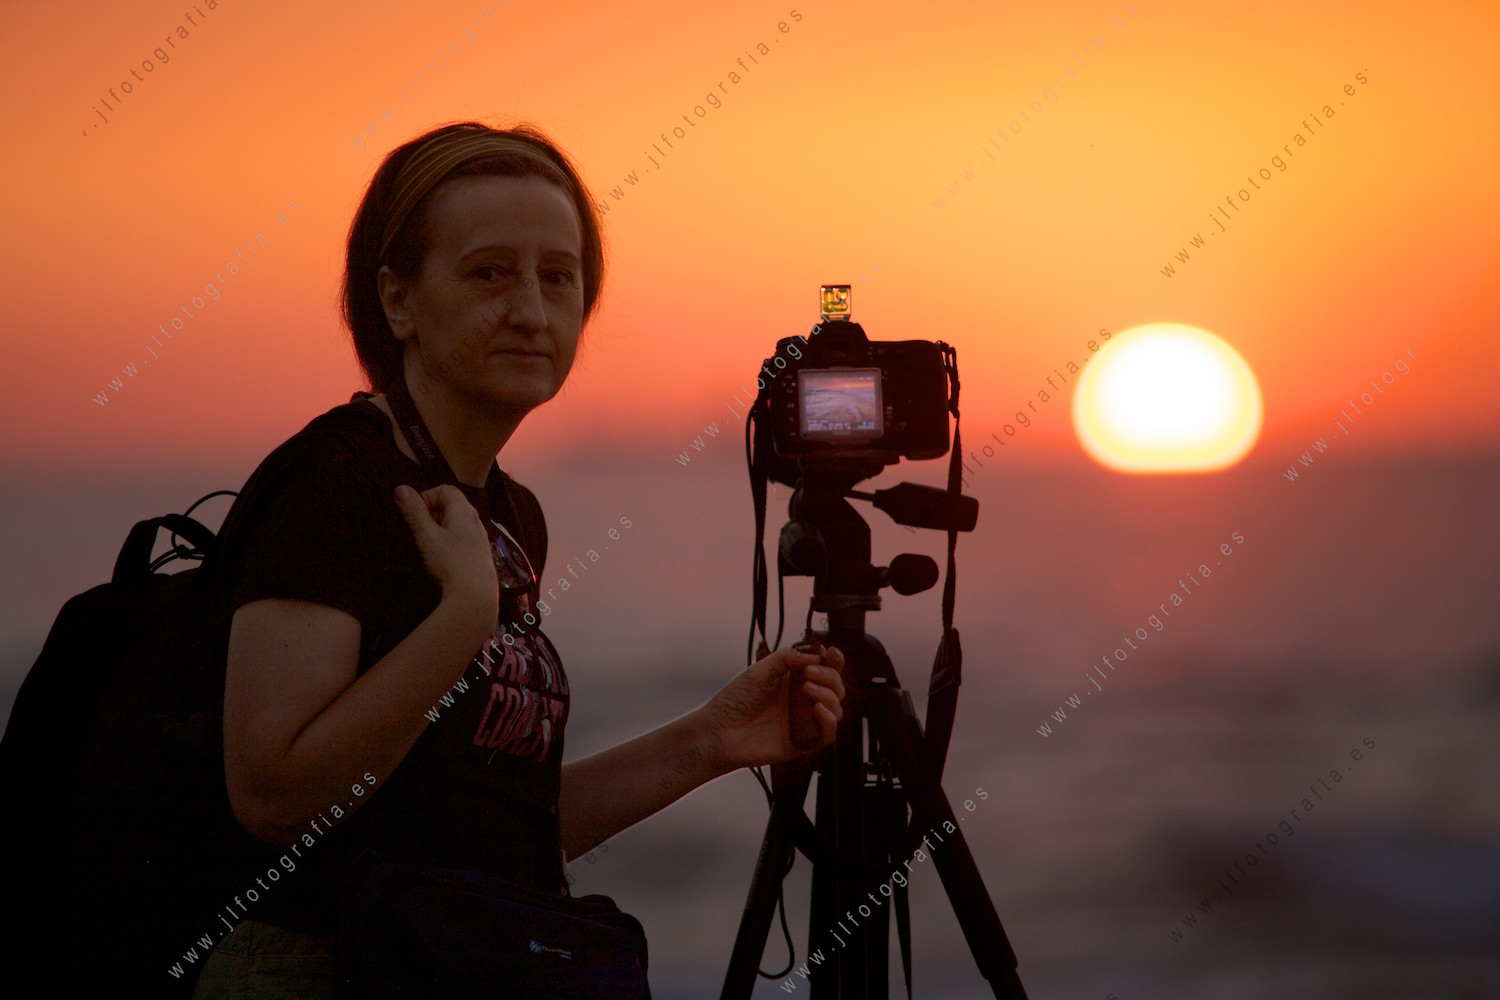 Josune Reoyo, durante la puesta, con su equipo fotográfico preparado para la foto de paisaje marino